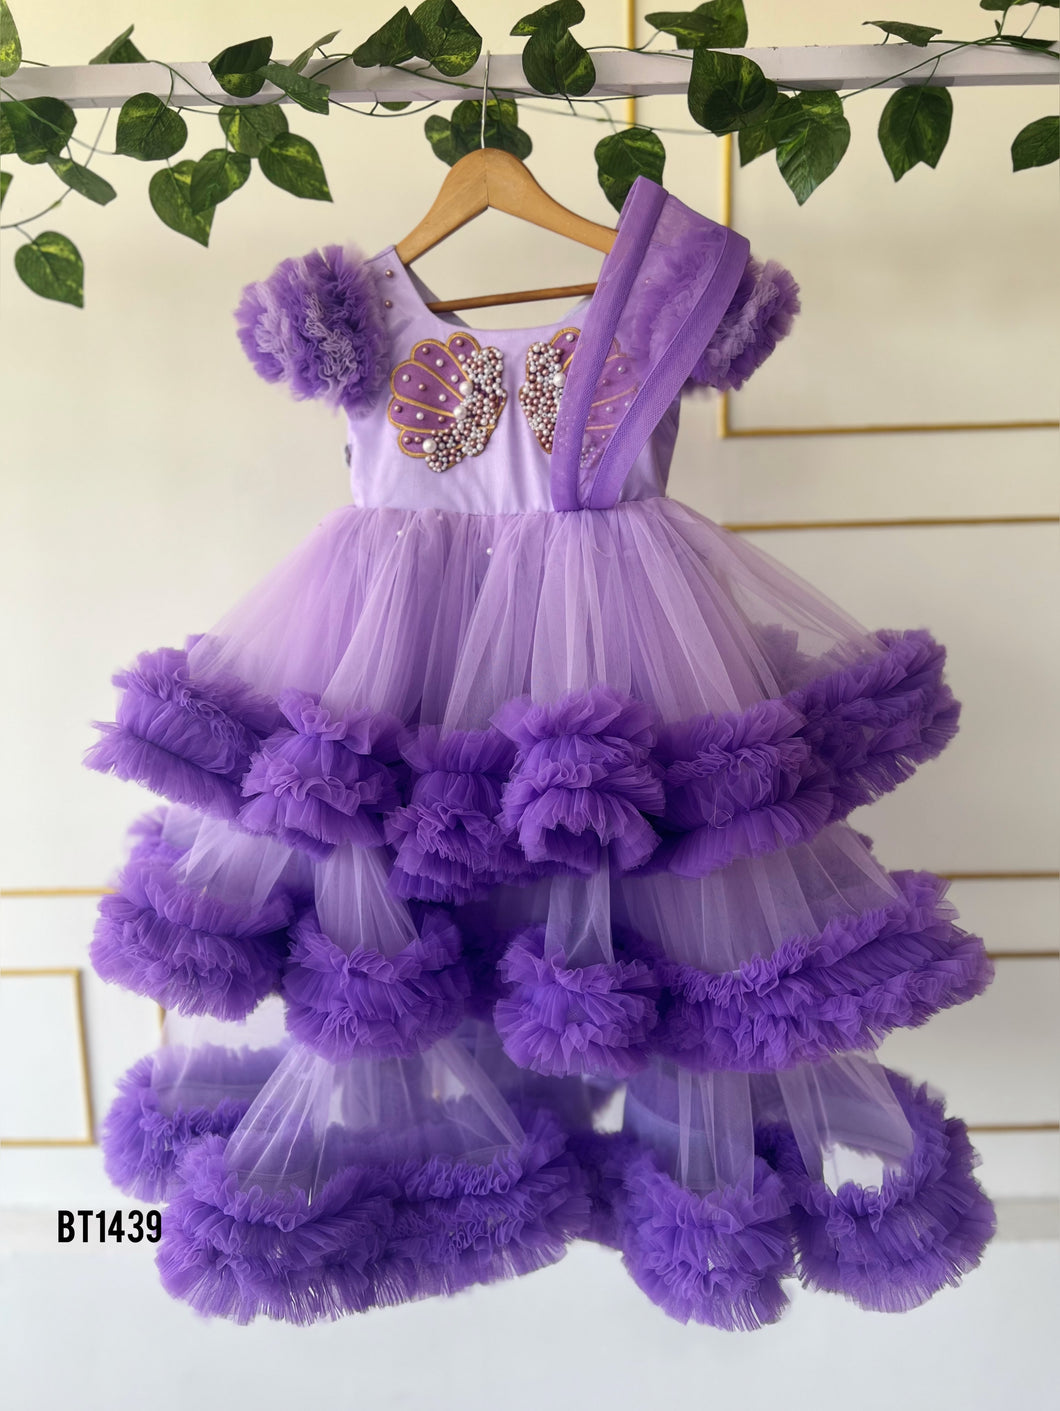 BT1439 Lavender Dream: Regal Princess Party Gown